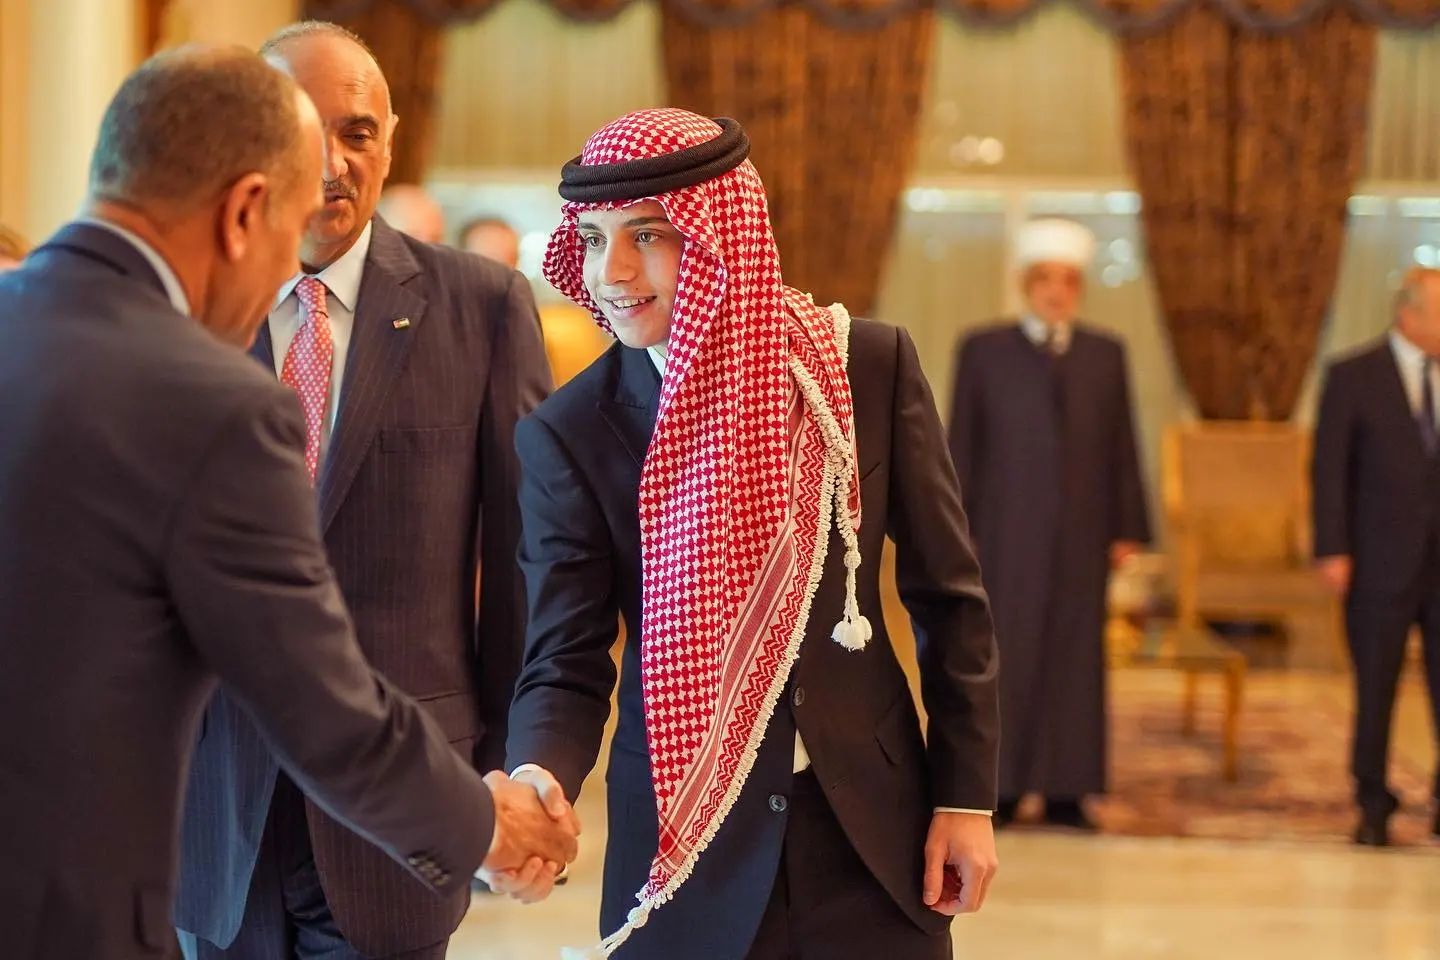 الأمير هاشم وهو يصافح أحد أعضاء مجلس الوزارة عقب أدائه اليمين الدستورية بعد مغادرة الملك للأردن متوجها إلى مصر.